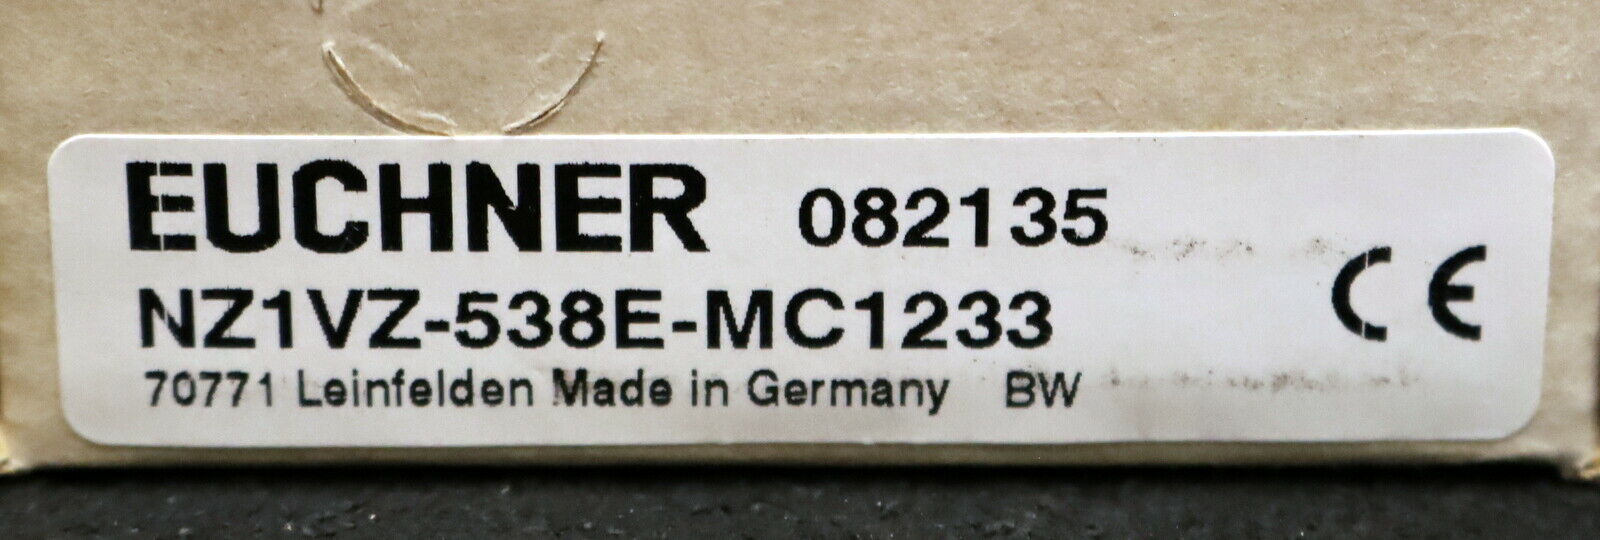 EUCHNER Sicherheitsschalter NZ1VZ-538E-MC1233 Art.Nr. 082135 unbenutzt in OVP